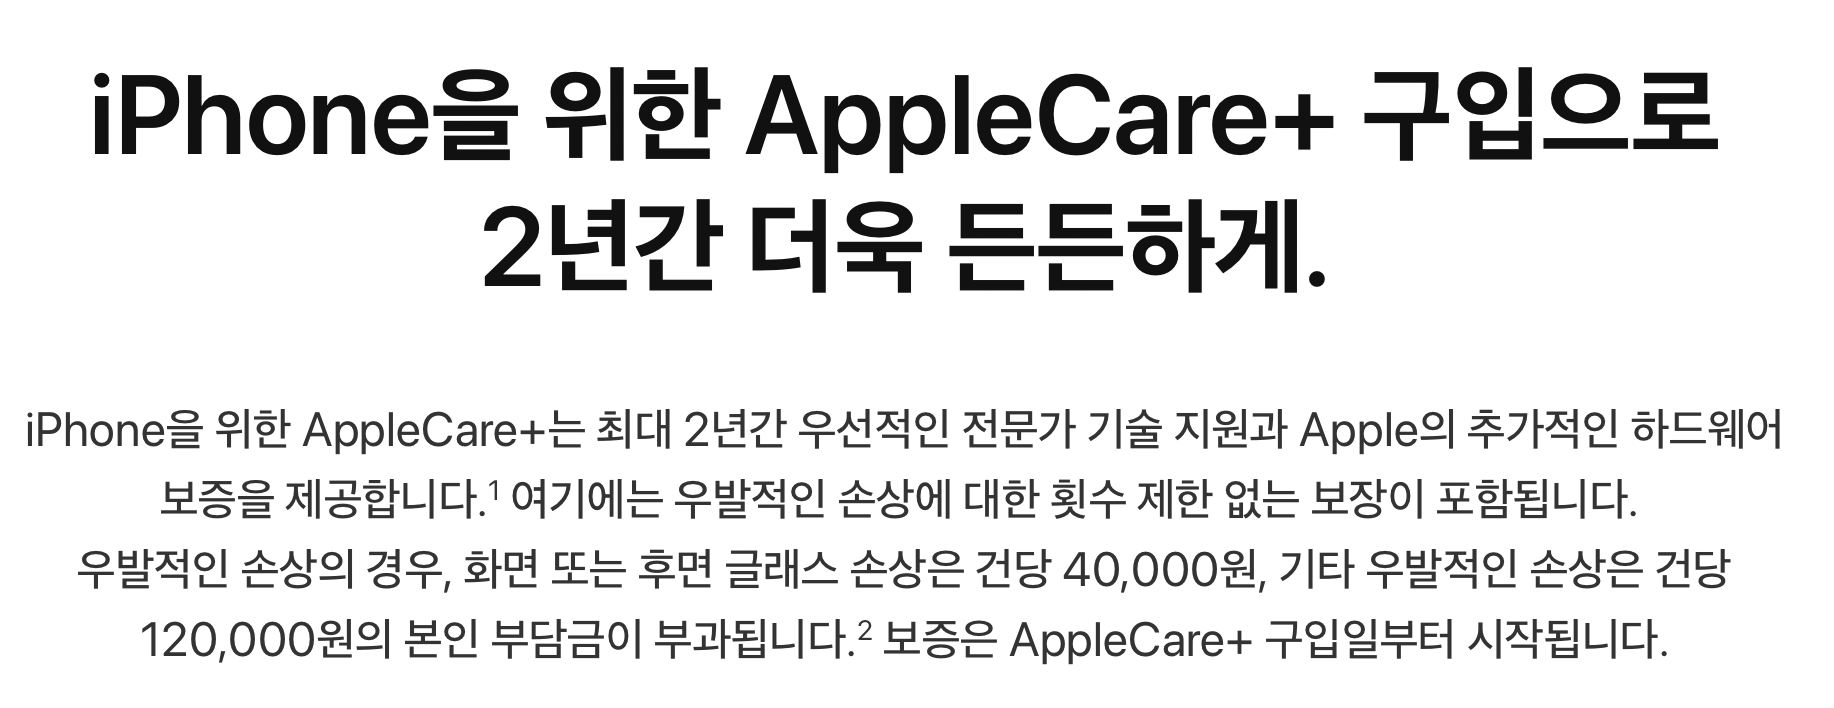 아이폰-애플케어플러스-본인부담금-설명